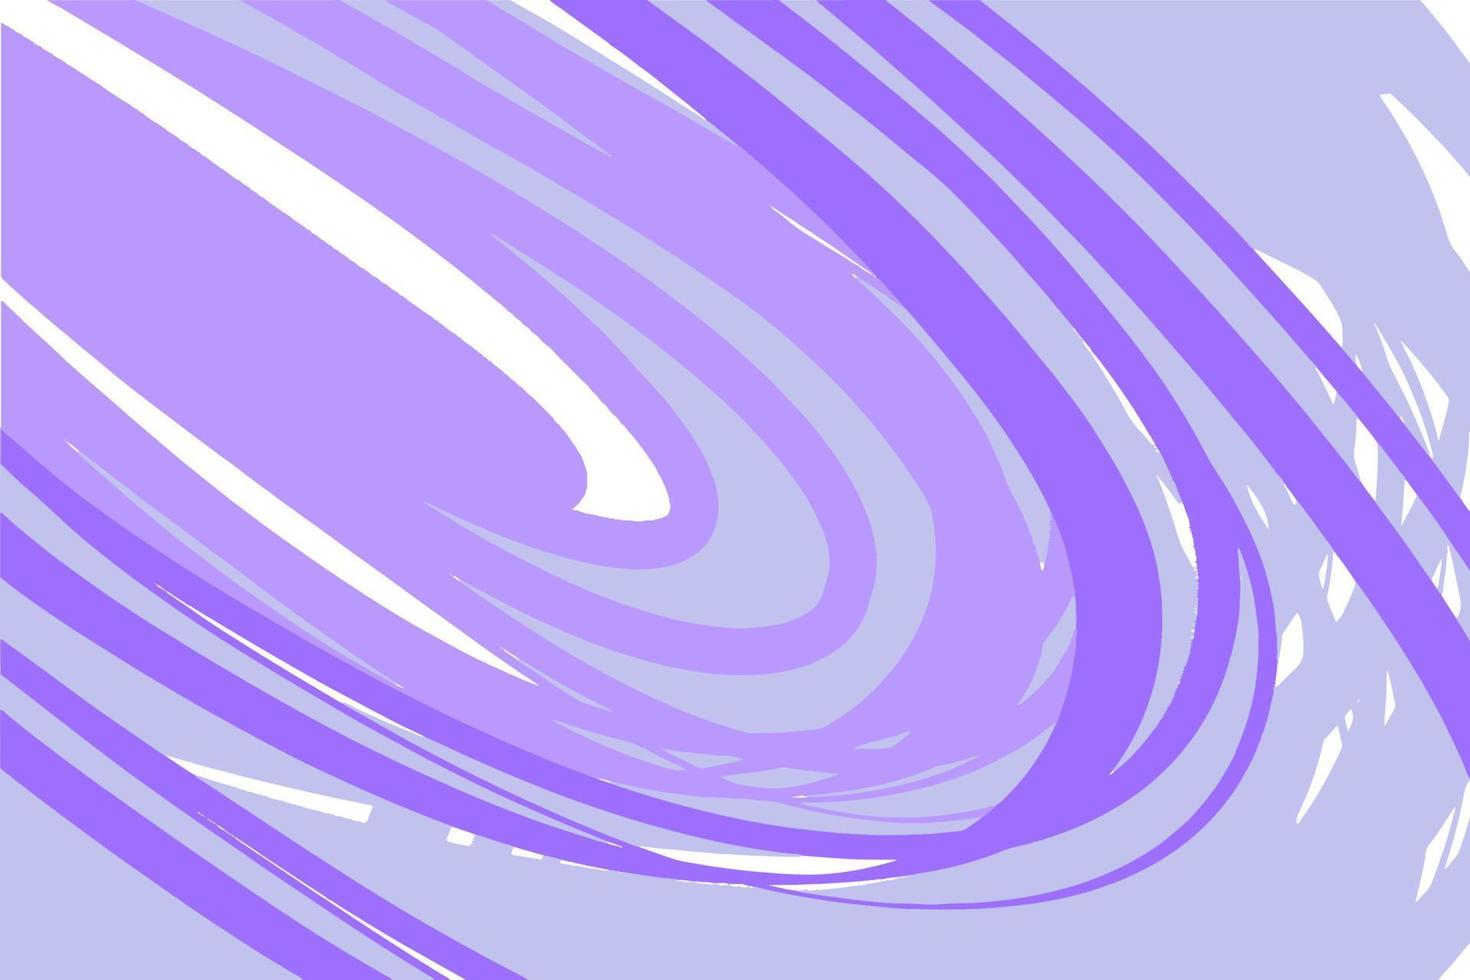 geometrisk akrylbakgrund på vit duk, i lila och lila toner, minimalistisk grafisk linje vektor